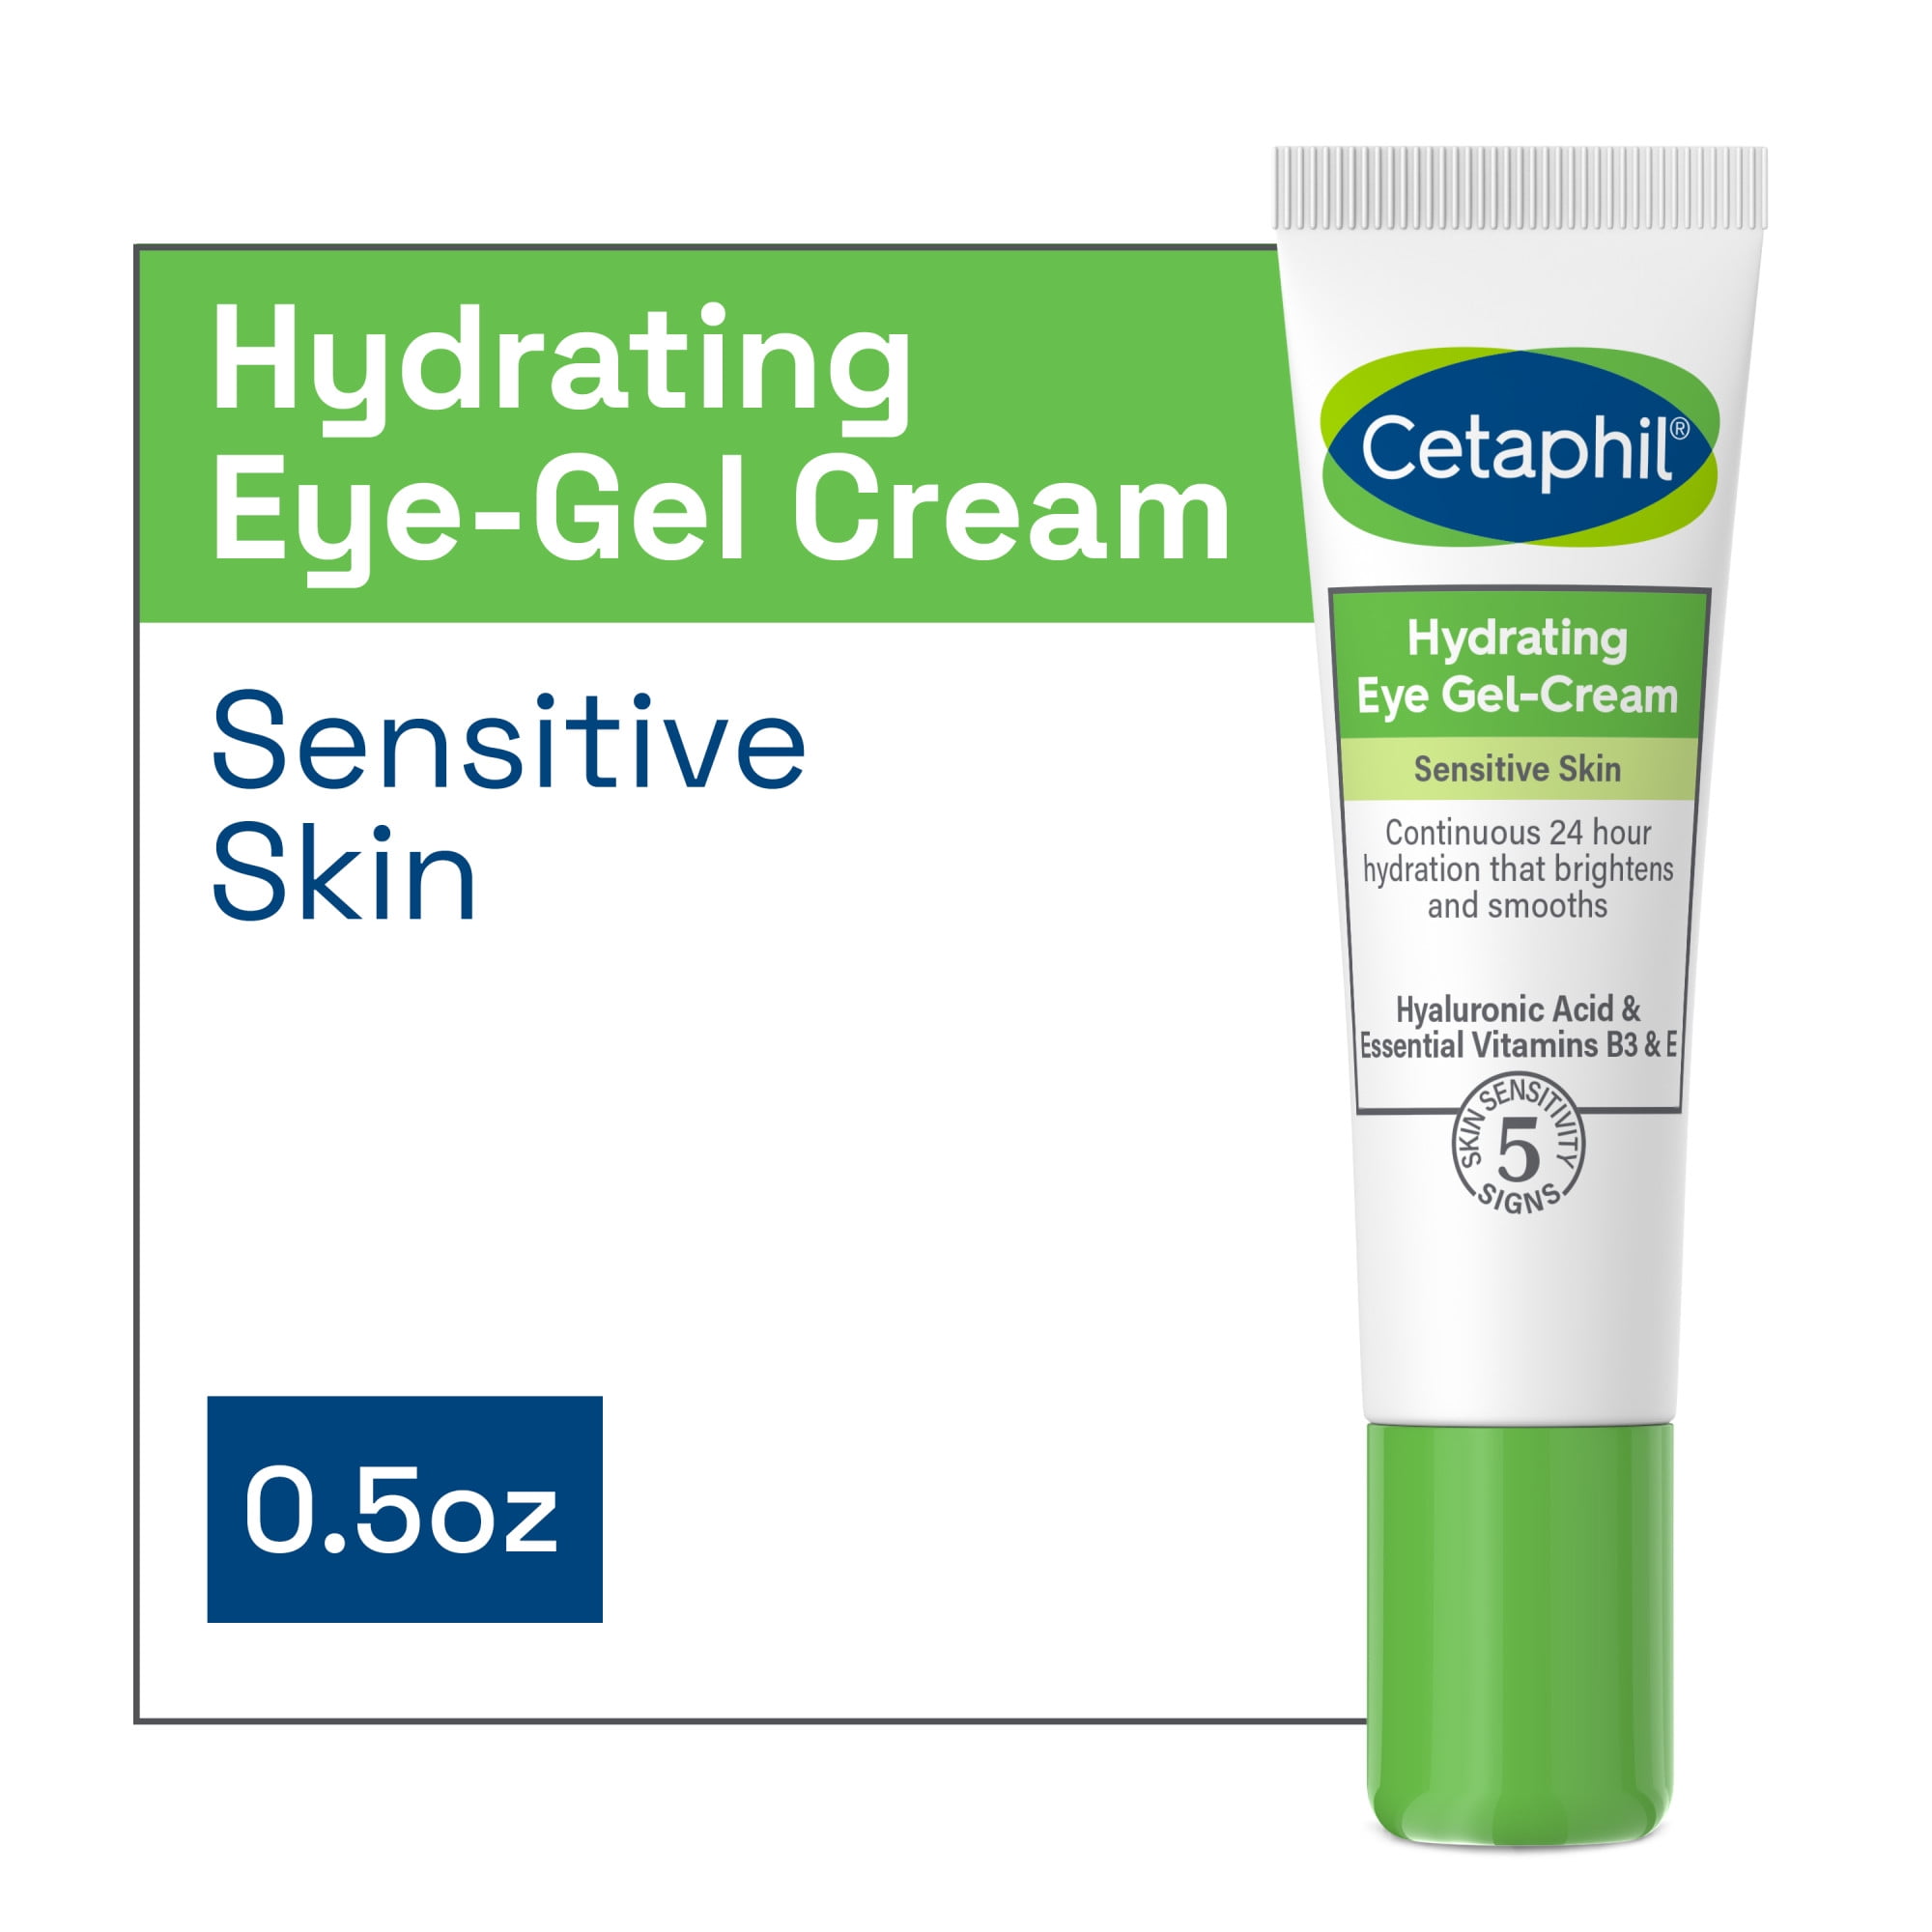 Cetaphil Hydrating Eye Gel-Cream With Hyaluronic Acid, 0.5 oz